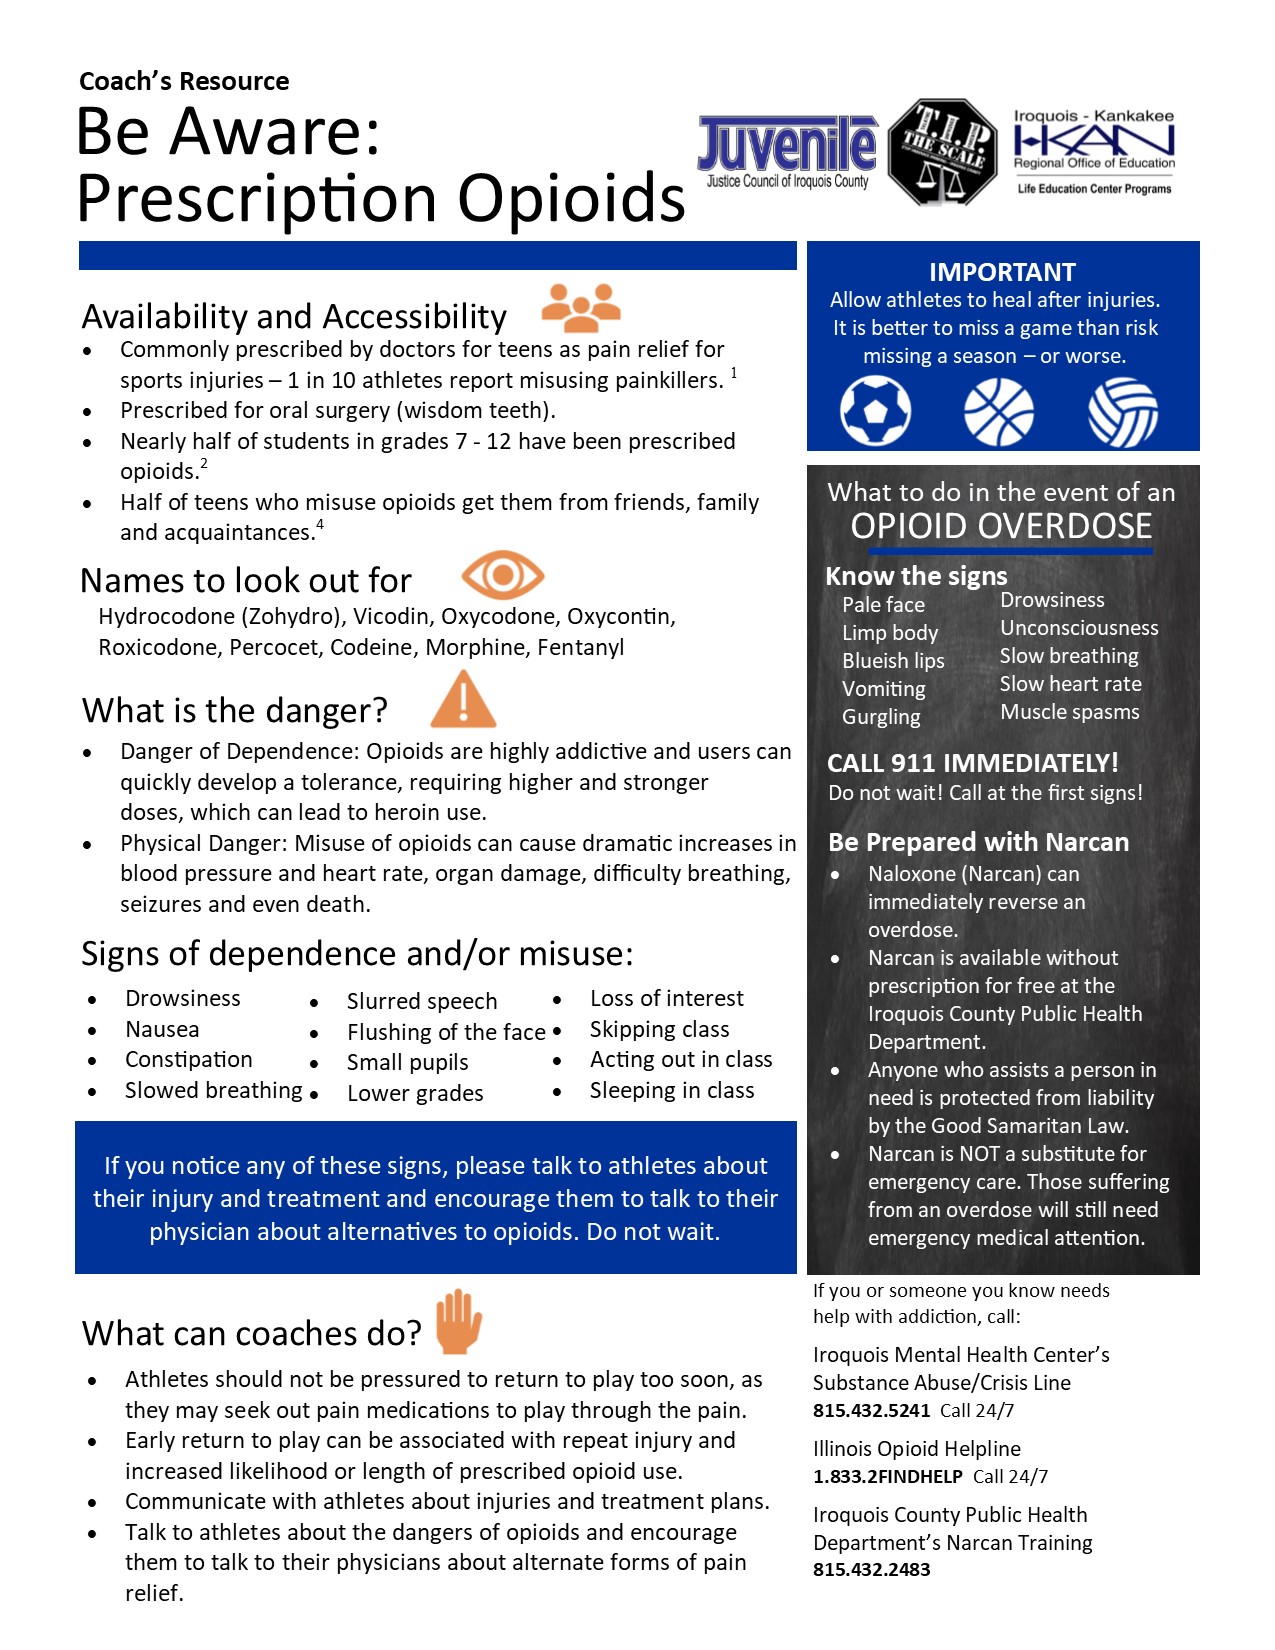 TIP 5 Coach's Resources edits Prescription Opioids Side #1 10.15.19